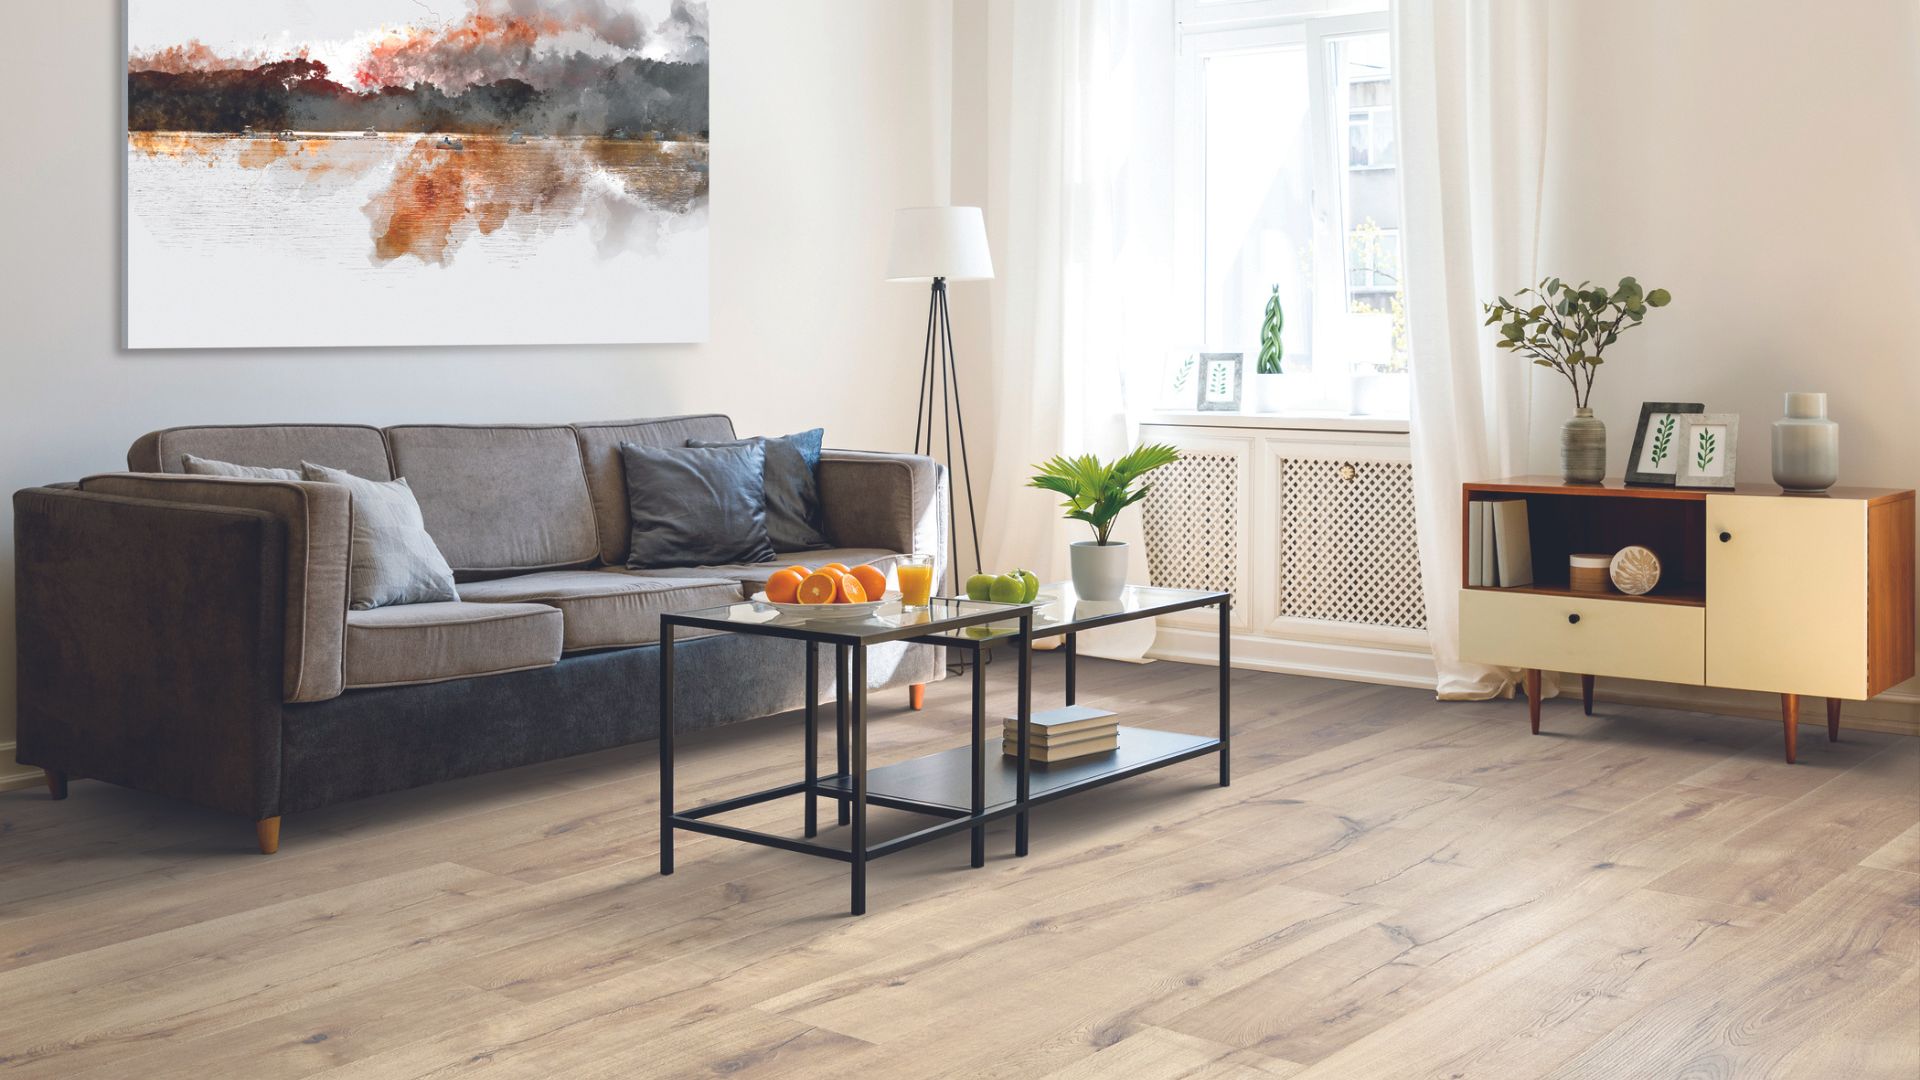 Wood-look laminate floors in a living room.